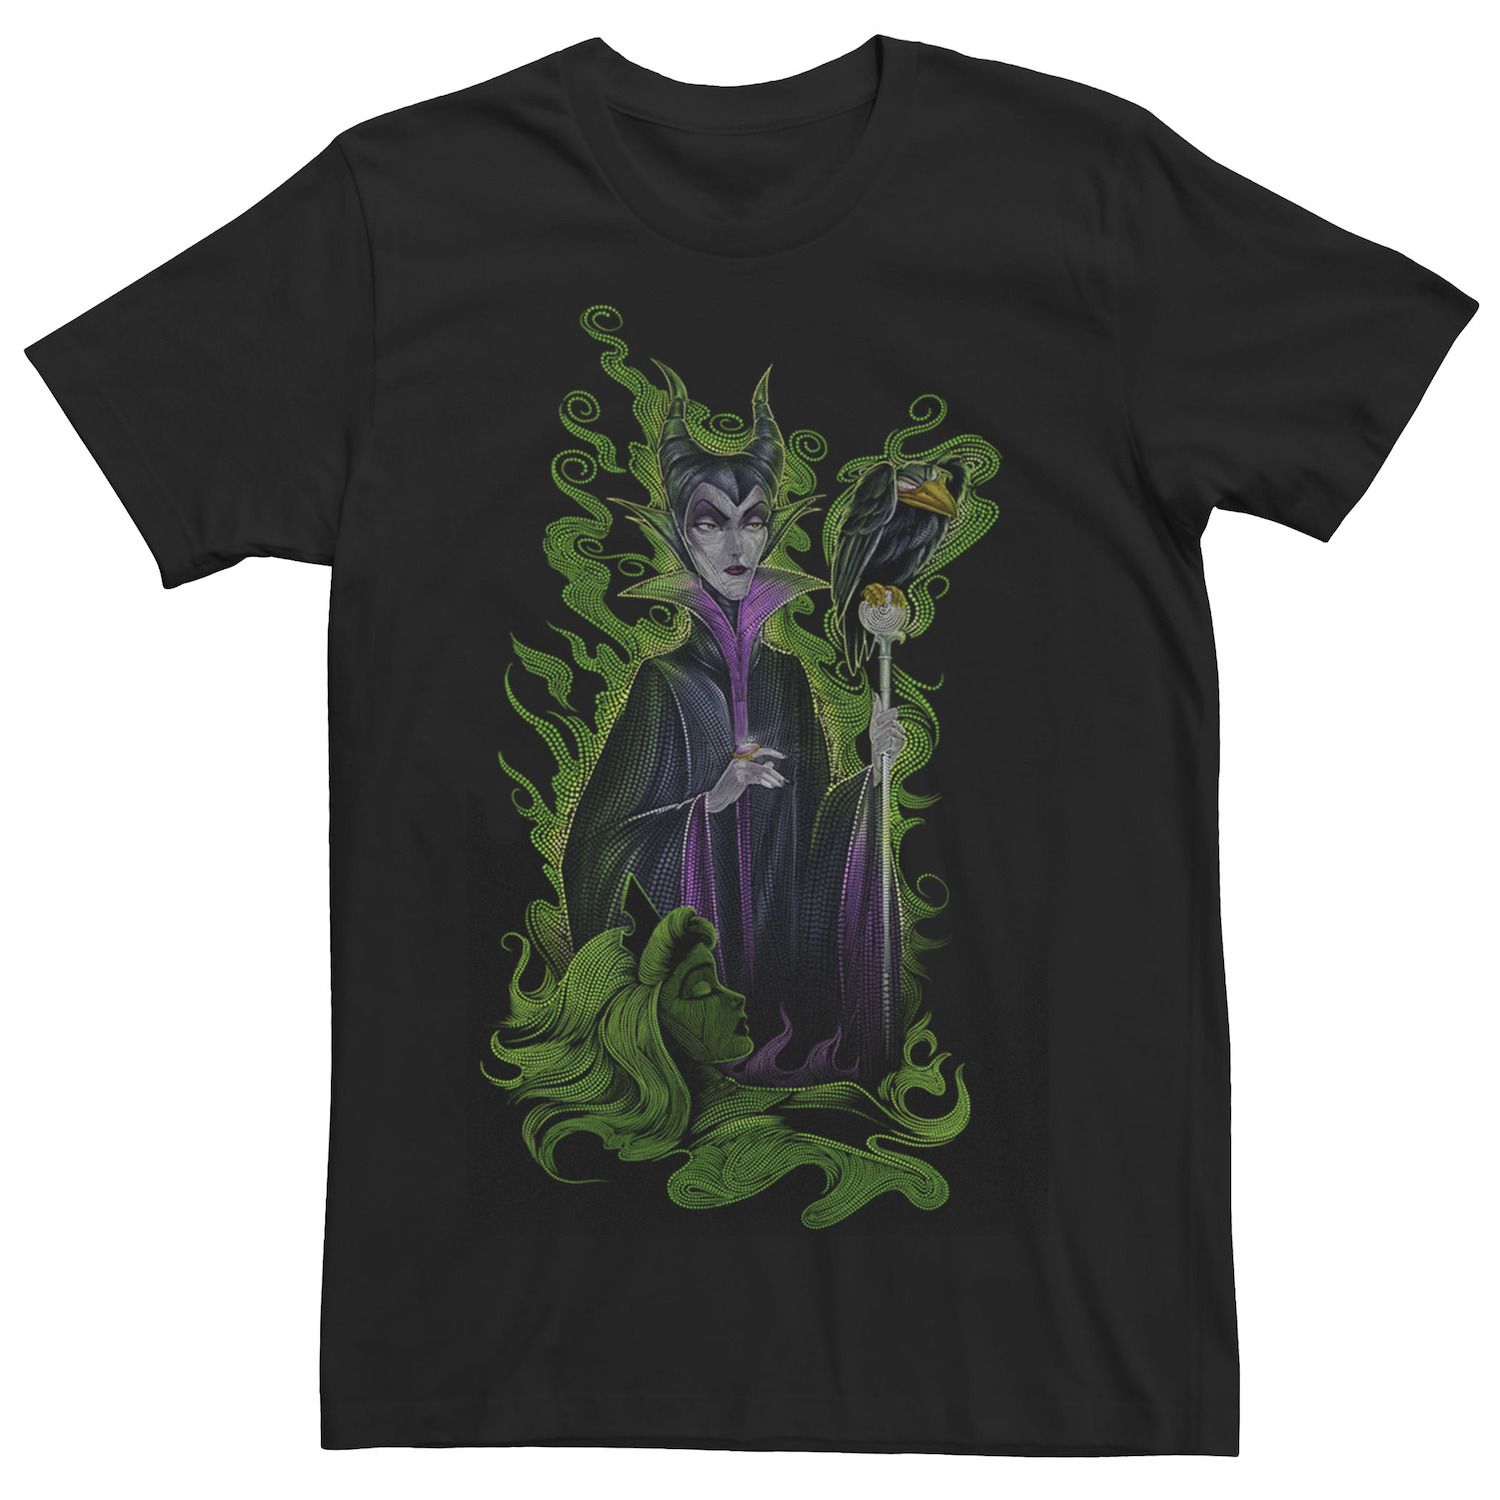 Мужская футболка Disney Sleeping Beauty Maleficent Green Envy цена и фото